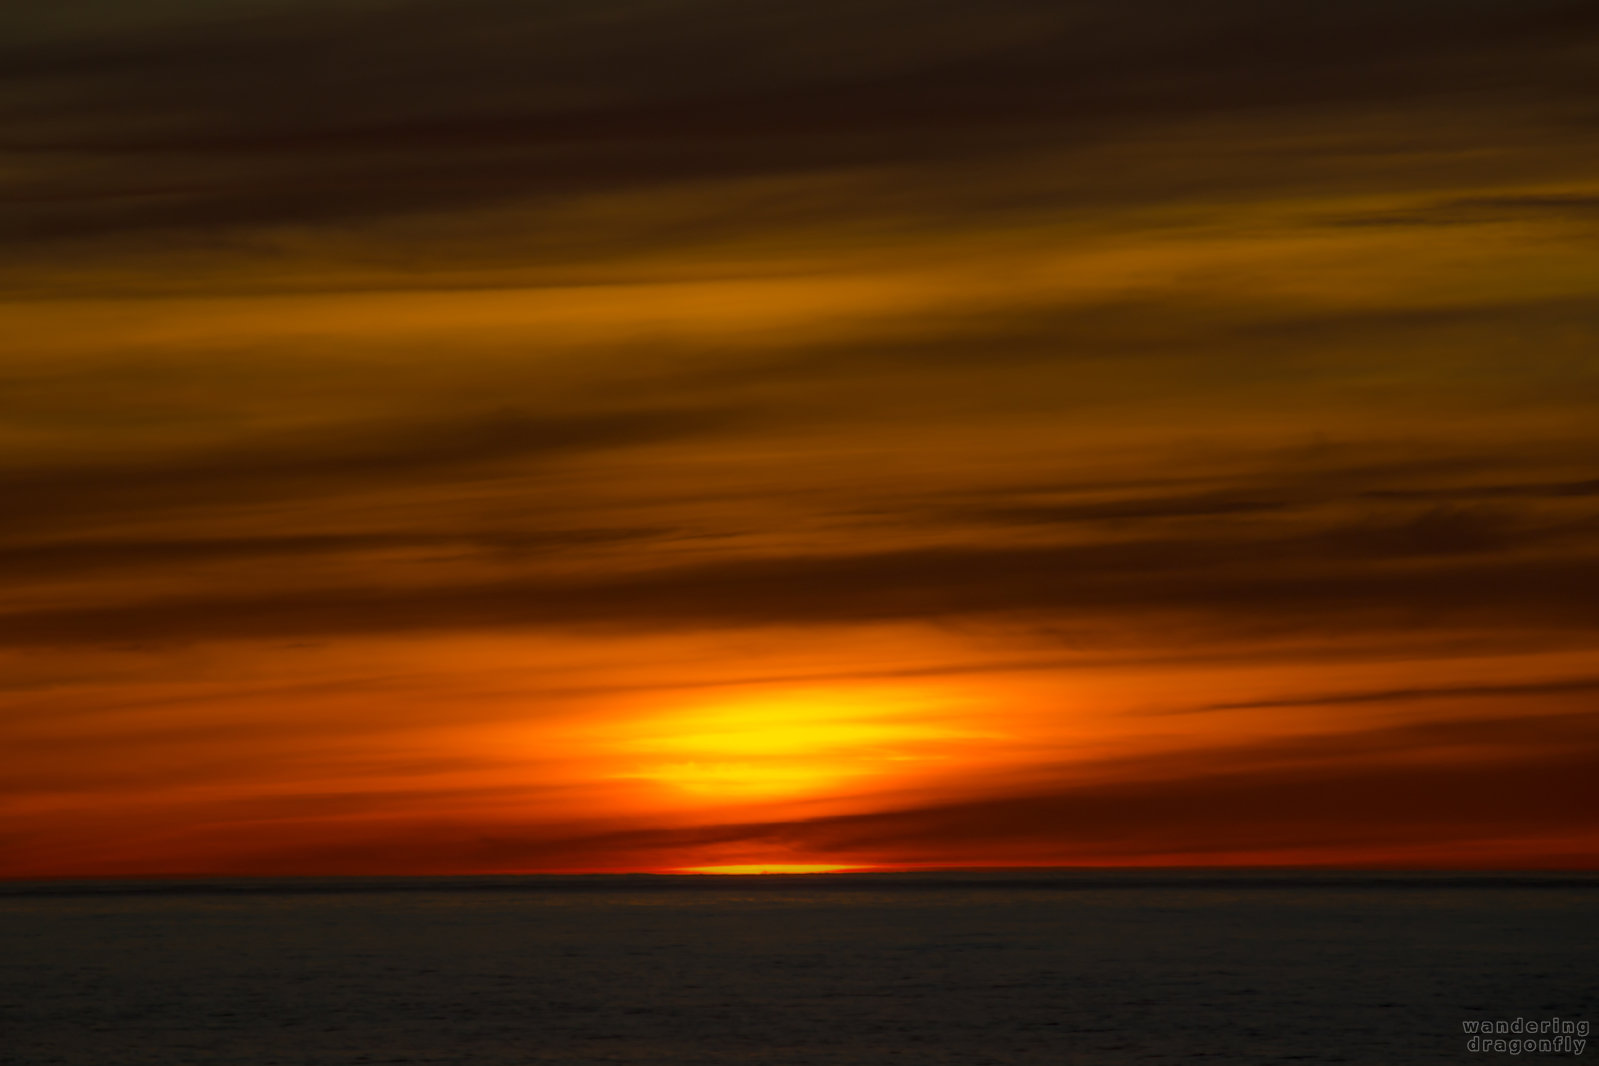 Blurred fire -- cloud, ocean, red, sun, sunset, water